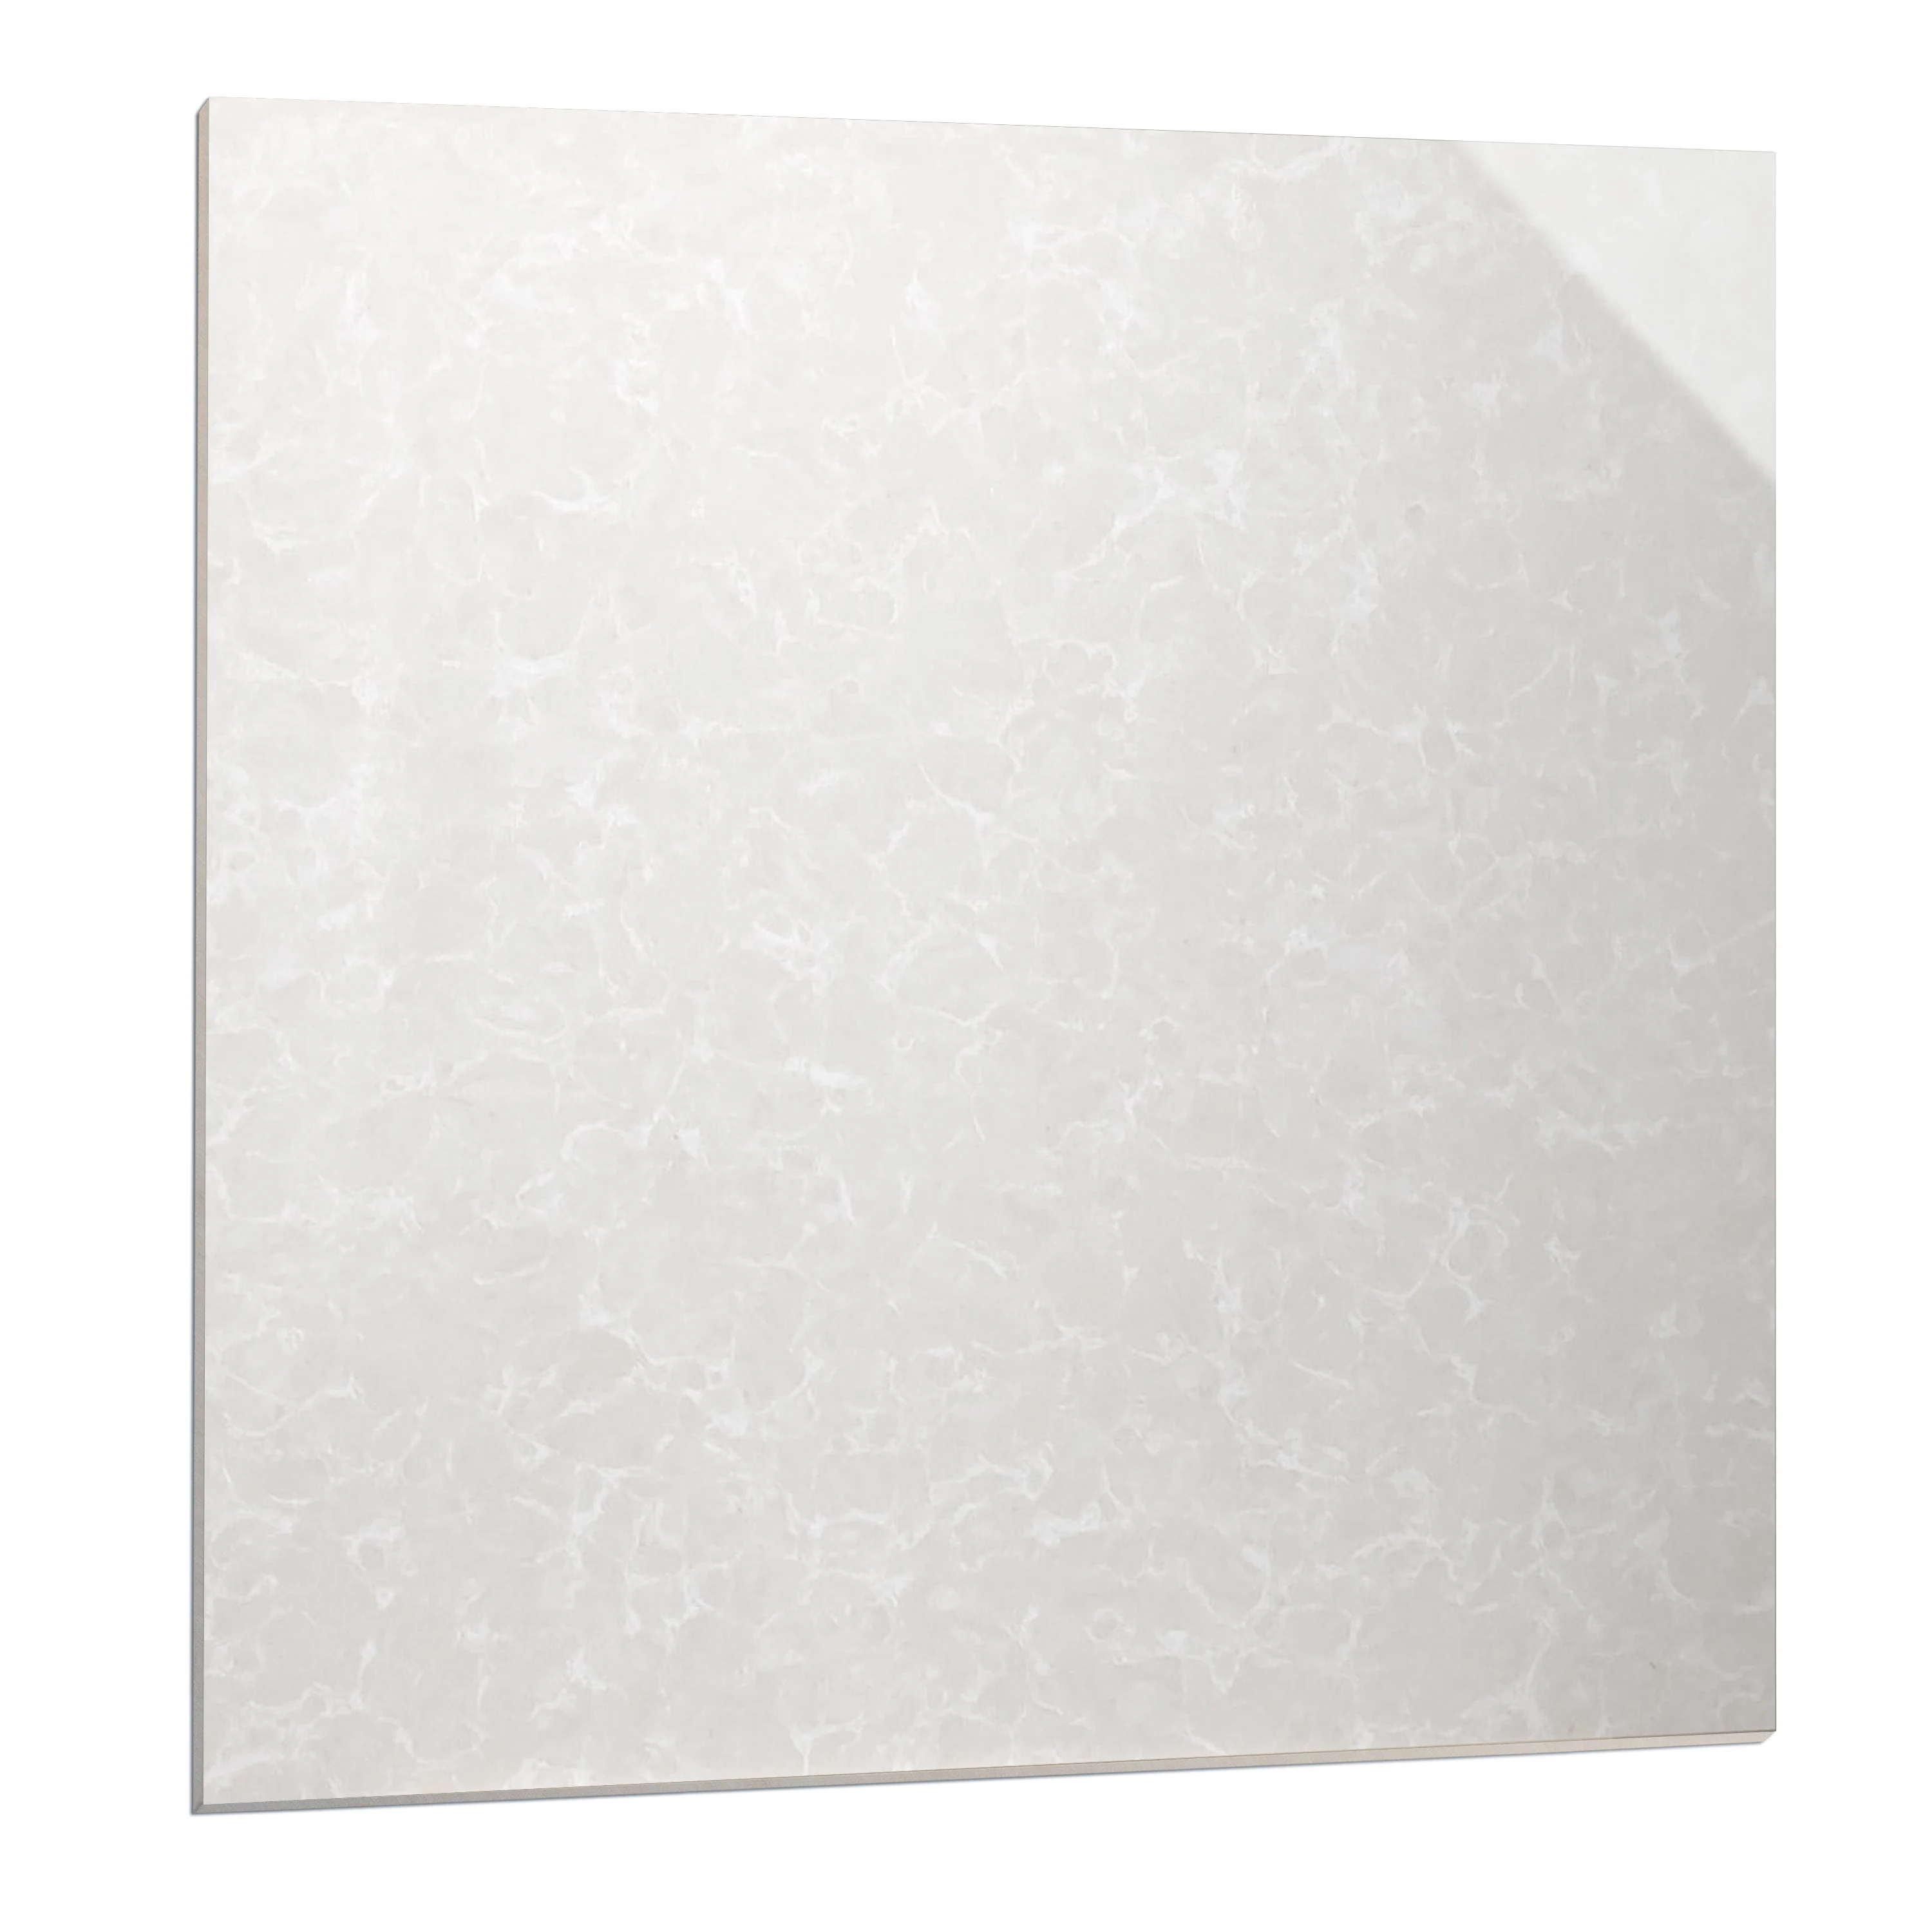 High Gloss 600x600 Mable Polished Porcelain Floor Pulati Tiles